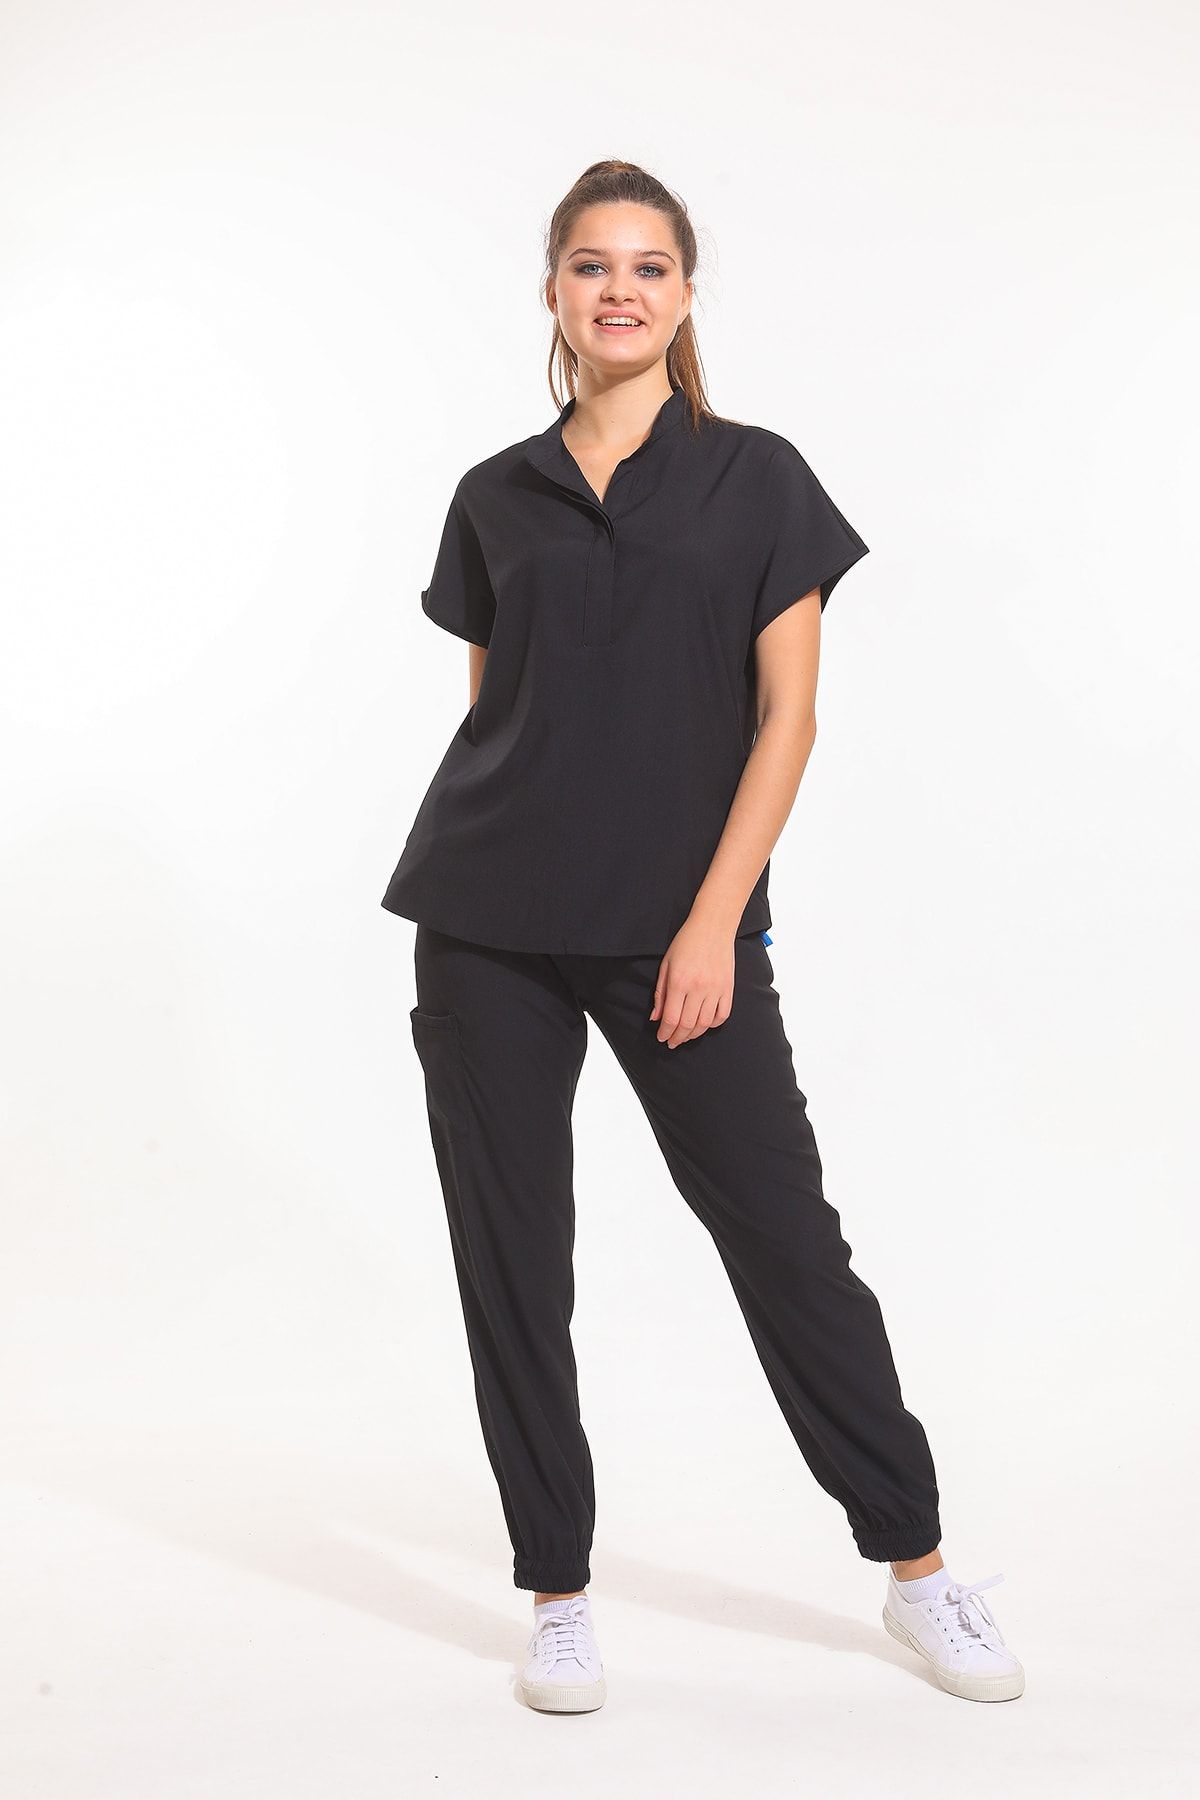 Wio Uniform Sanem Kadın Likralı Doktor Hemşire Cerrahi Üniforma Takımı - Siyah